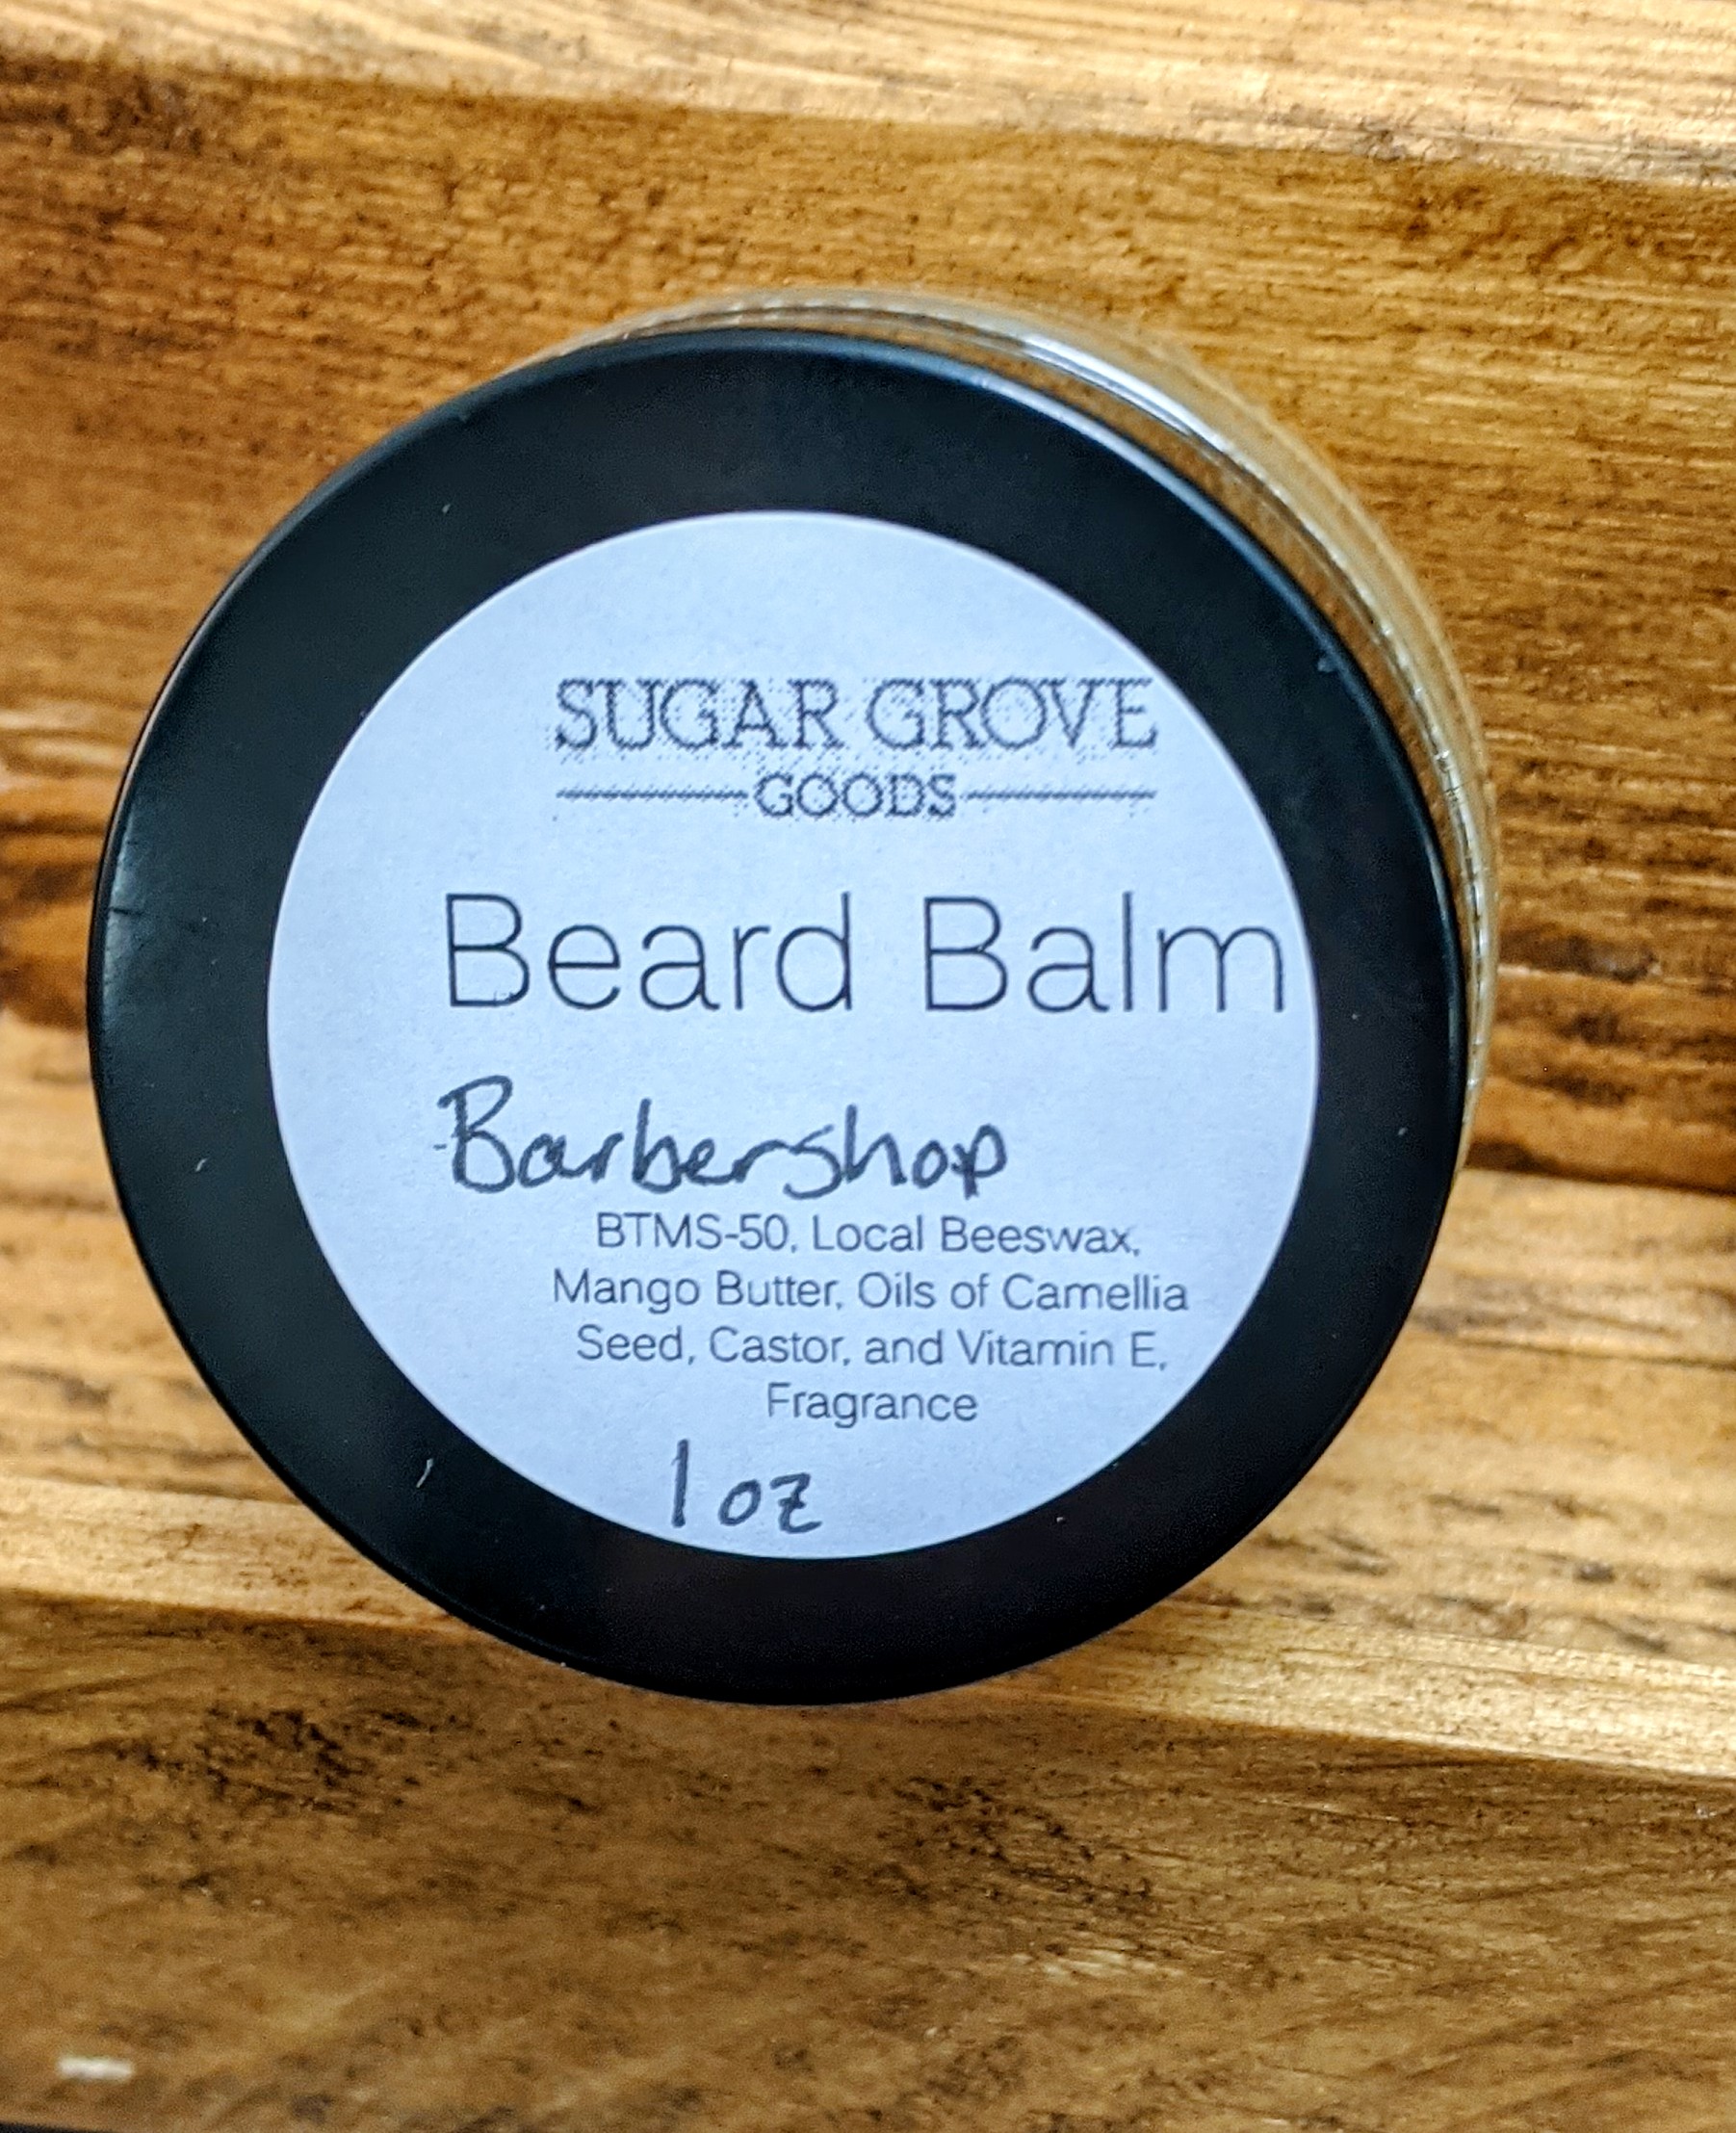 Beard Balm - Barbershop